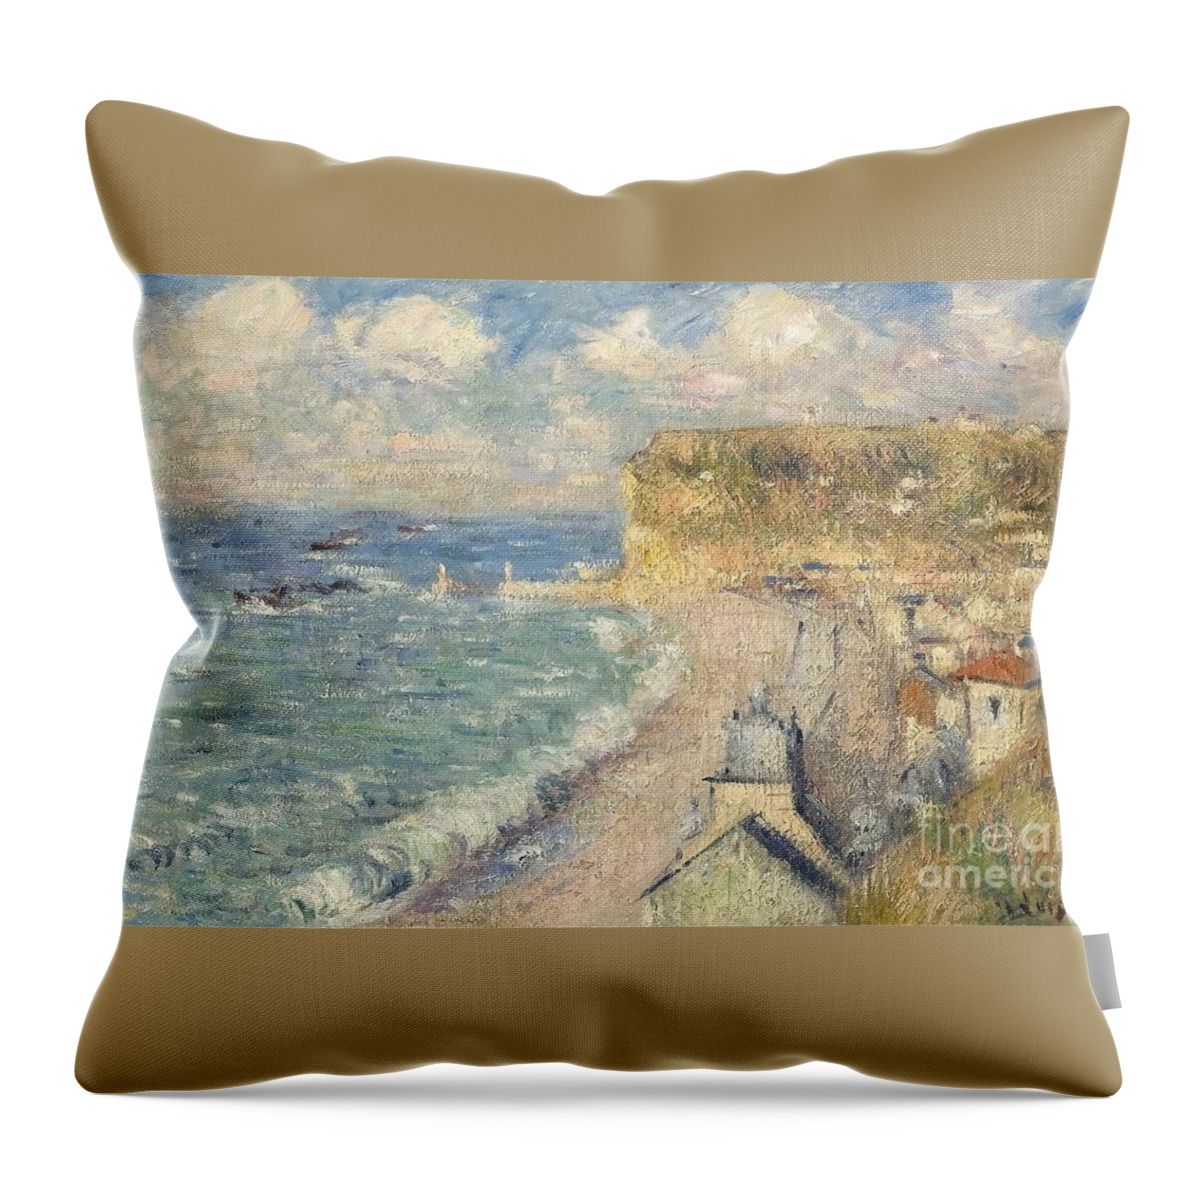 Gustave Loiseau (paris Throw Pillow featuring the painting La plage de fecamp by MotionAge Designs